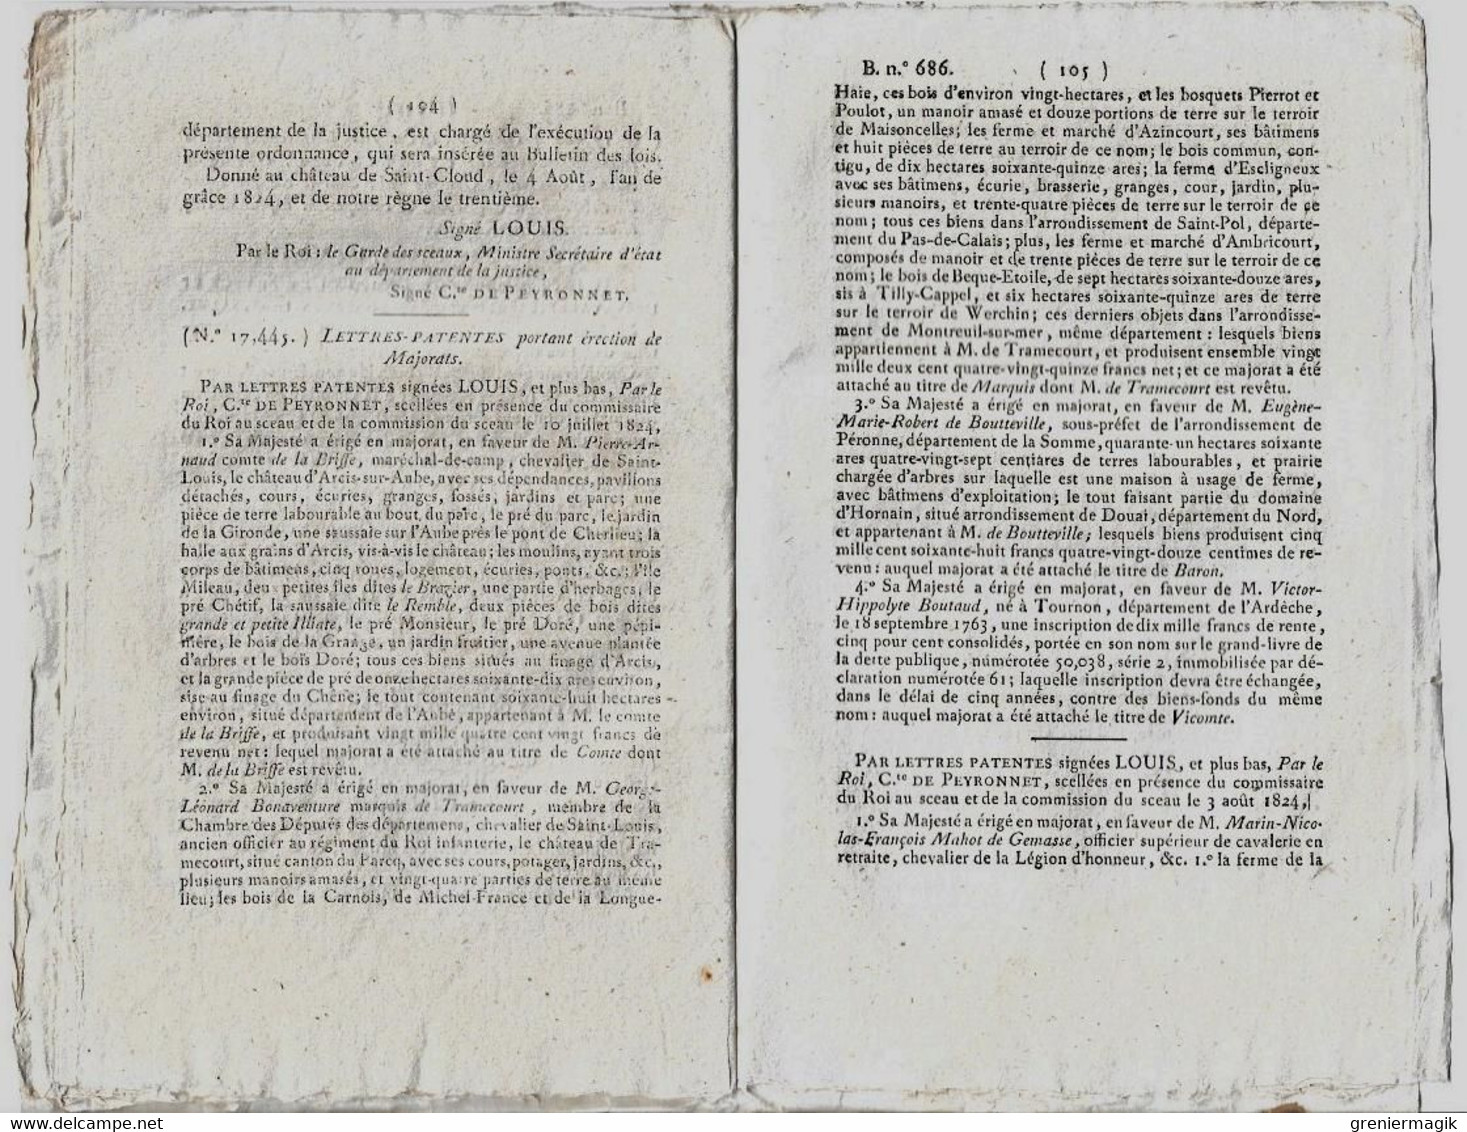 Bulletin des Lois N°686 1824 Fixation des dépenses et recettes 1825 (budget)/Indemnités aux juges greffiers.../Majorats